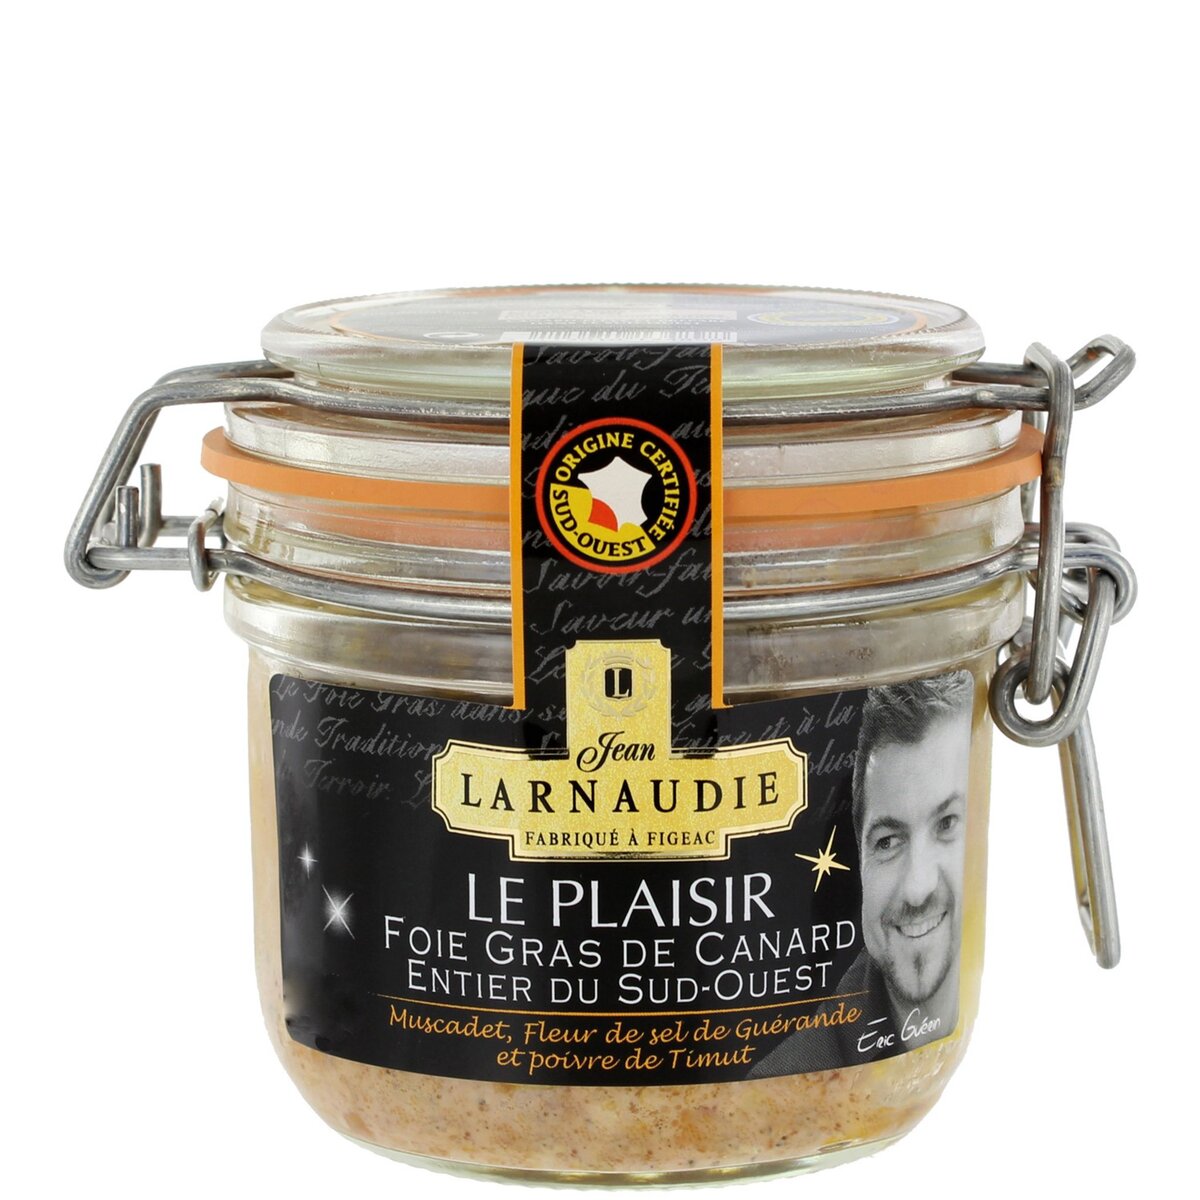 LARNAUDIE Foie gras de canard entier du sud ouest recette Eric Guérin IGP 170g